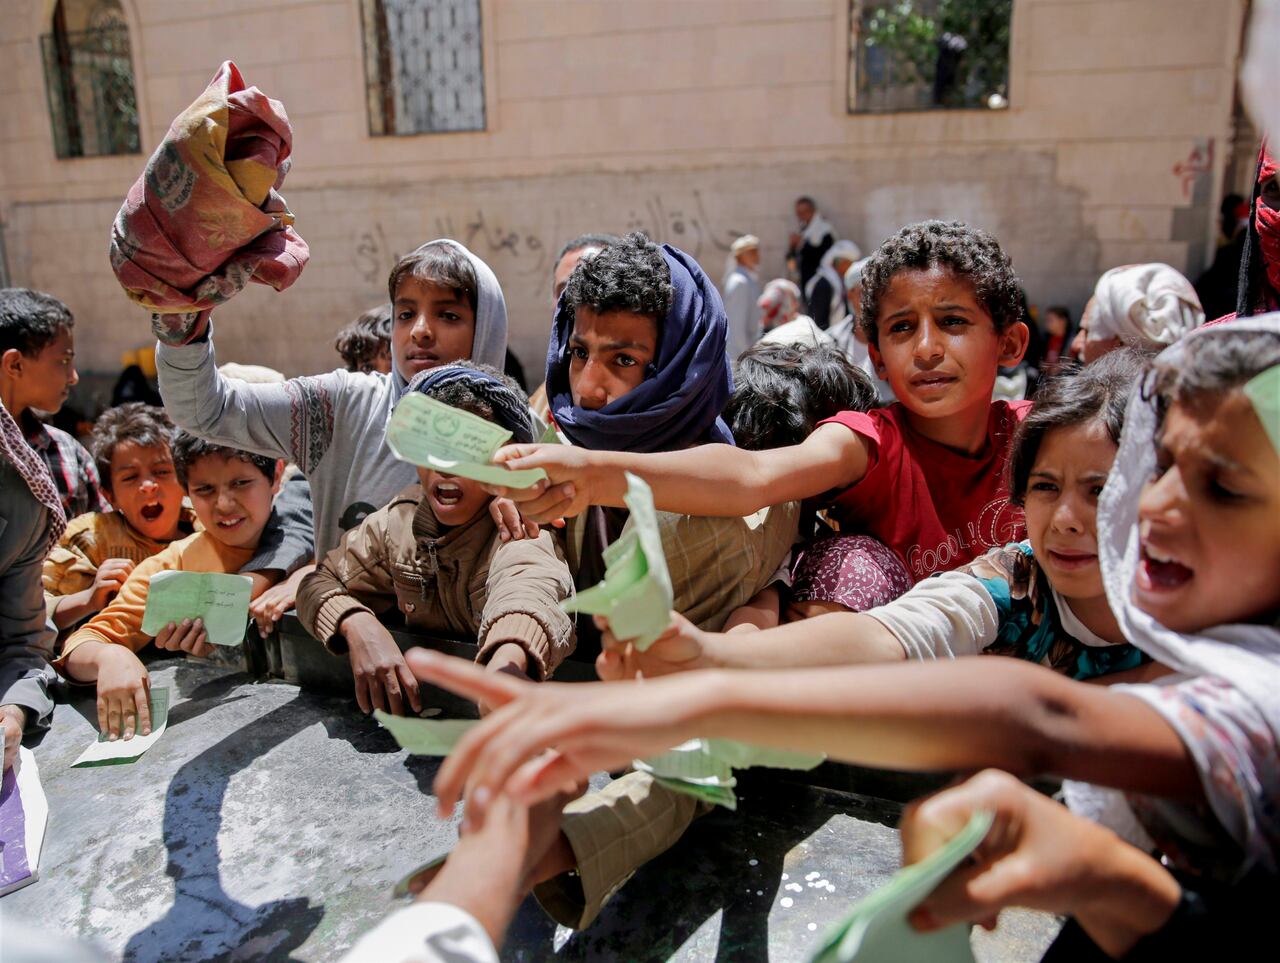 الأمم المتحدة تعلن التوصل لخارطة طريق لإنهاء أزمة اليمن، بما يشمل وقف إطلاق النار